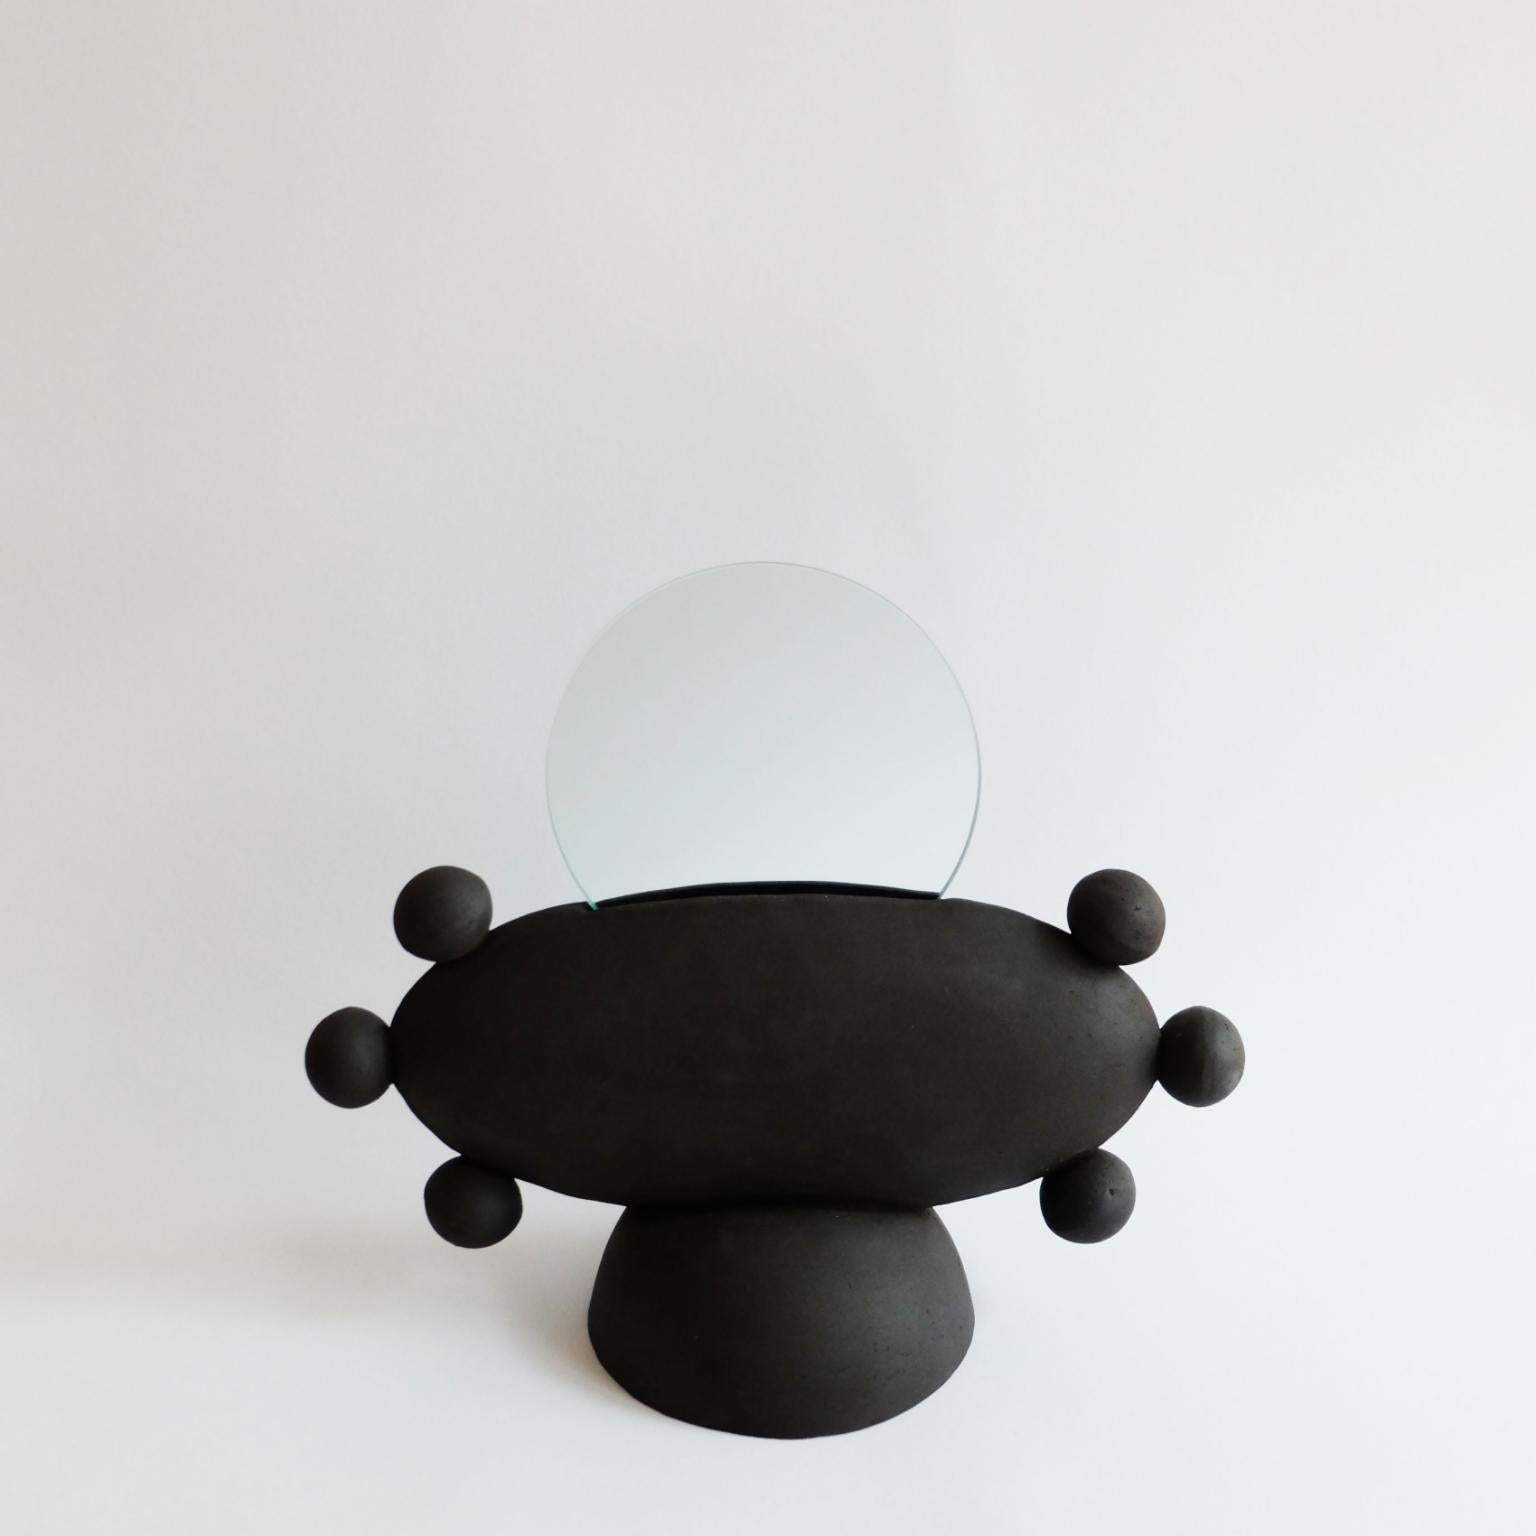 Einzigartiger UFO-Spiegel von Ia Kutateladze
Abmessungen: B 33 x H 26 cm
MATERIALIEN: Lehm

UFO 02 ist ein handgefertigter Keramikspiegel. Verspieltes und kühnes, funktionelles Dekorationsobjekt für verschiedene Arten von Innenräumen.

IAAI / Ia